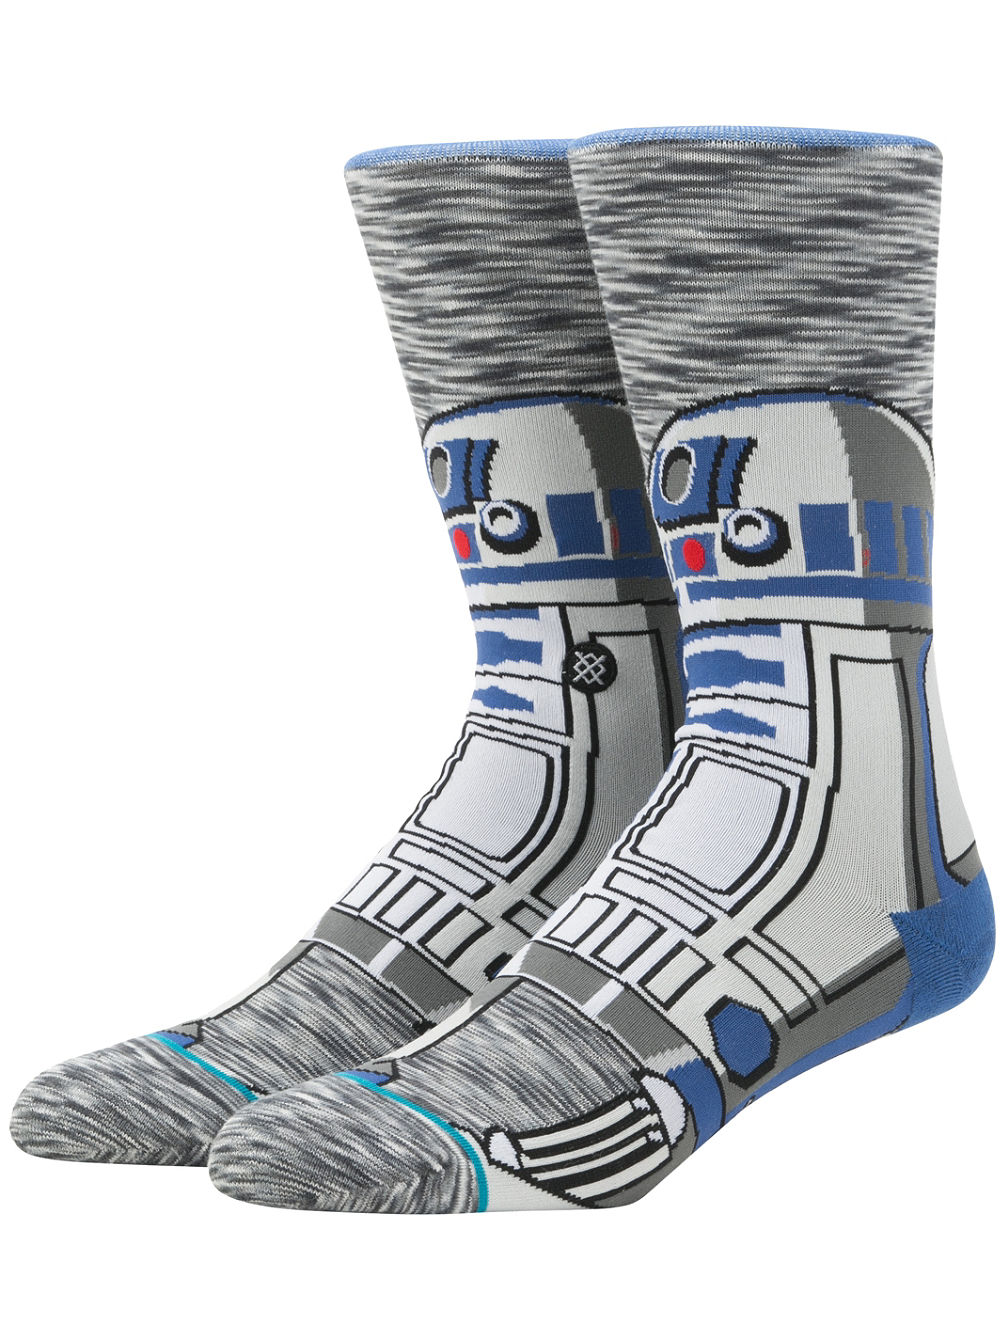 R2 Unit Star Wars Socks